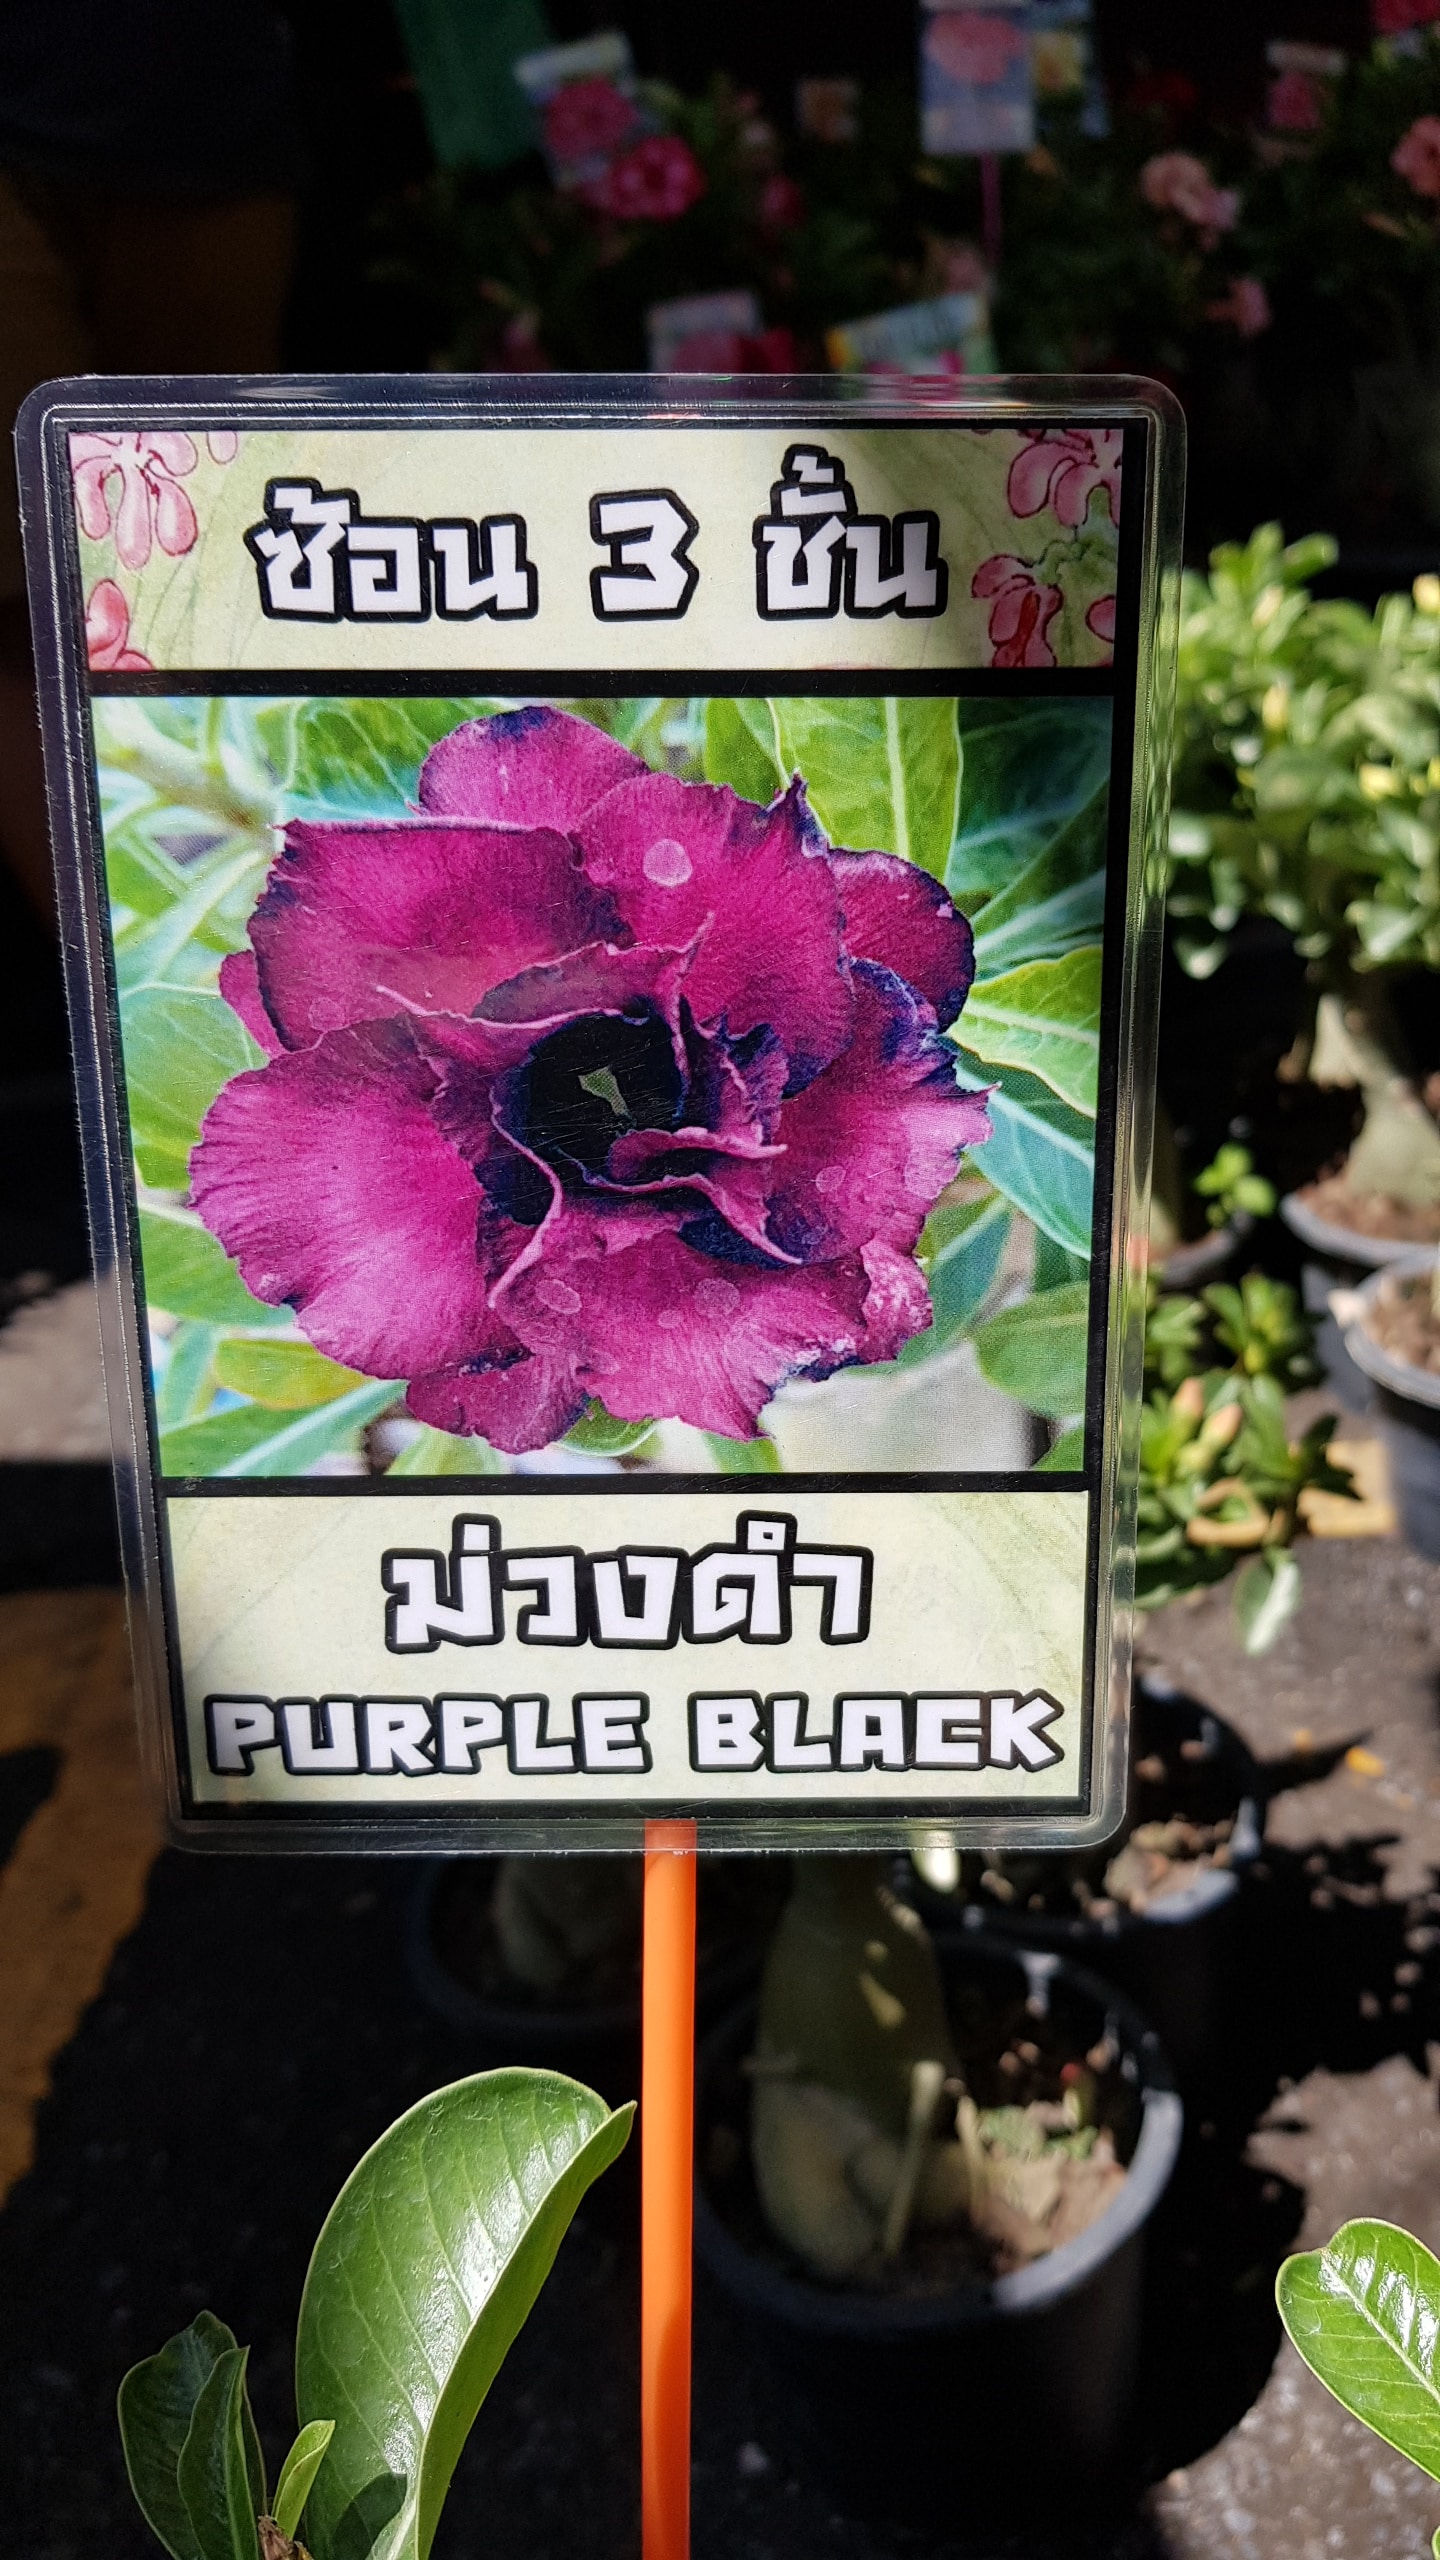 Adenium obessum 'Purple black'